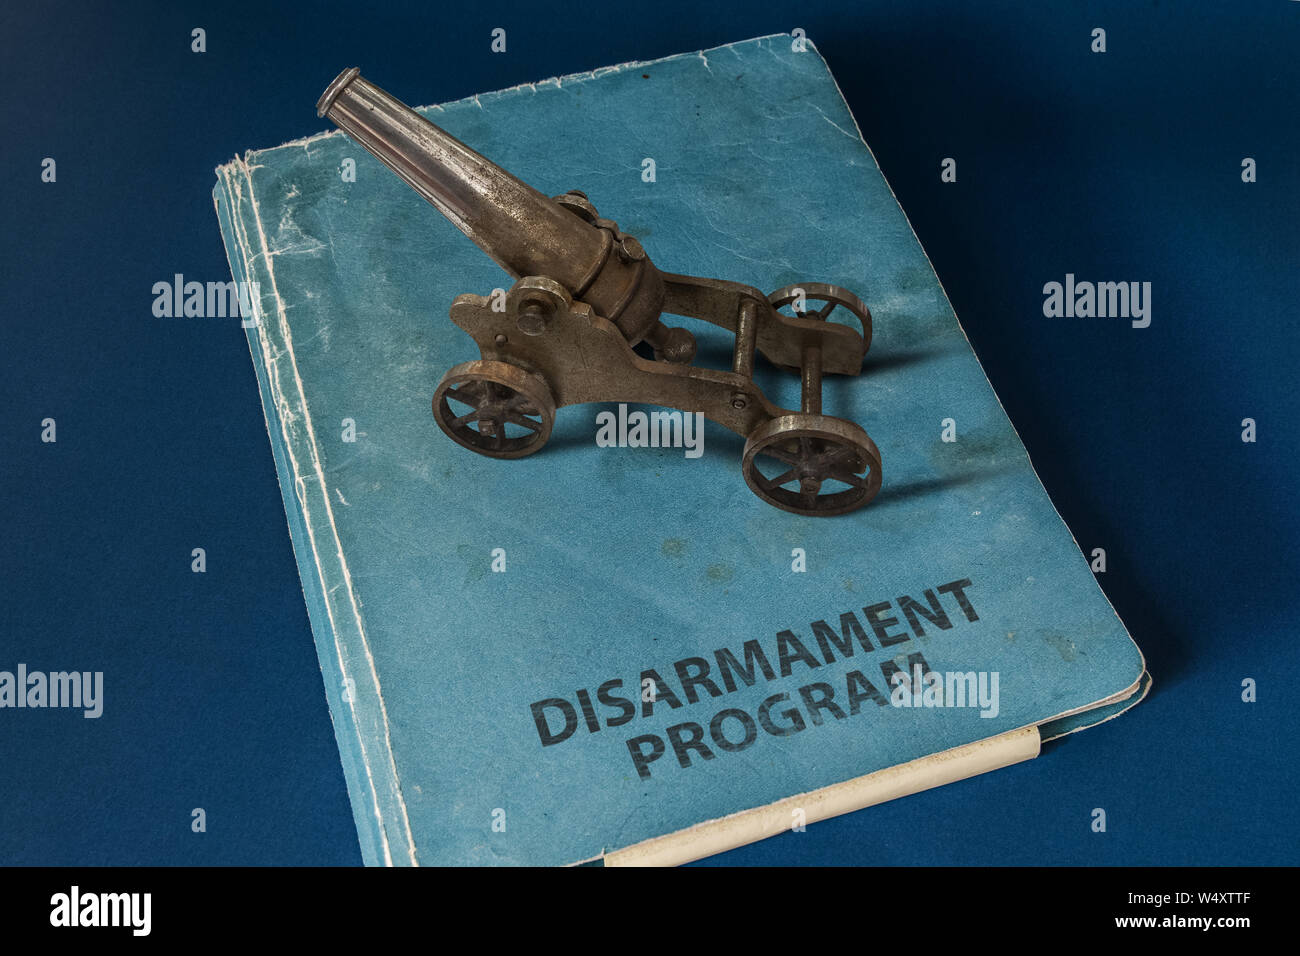 Un petit canon à poudre noire en haut d'un document dont le titre est : programme de désarmement. Banque D'Images